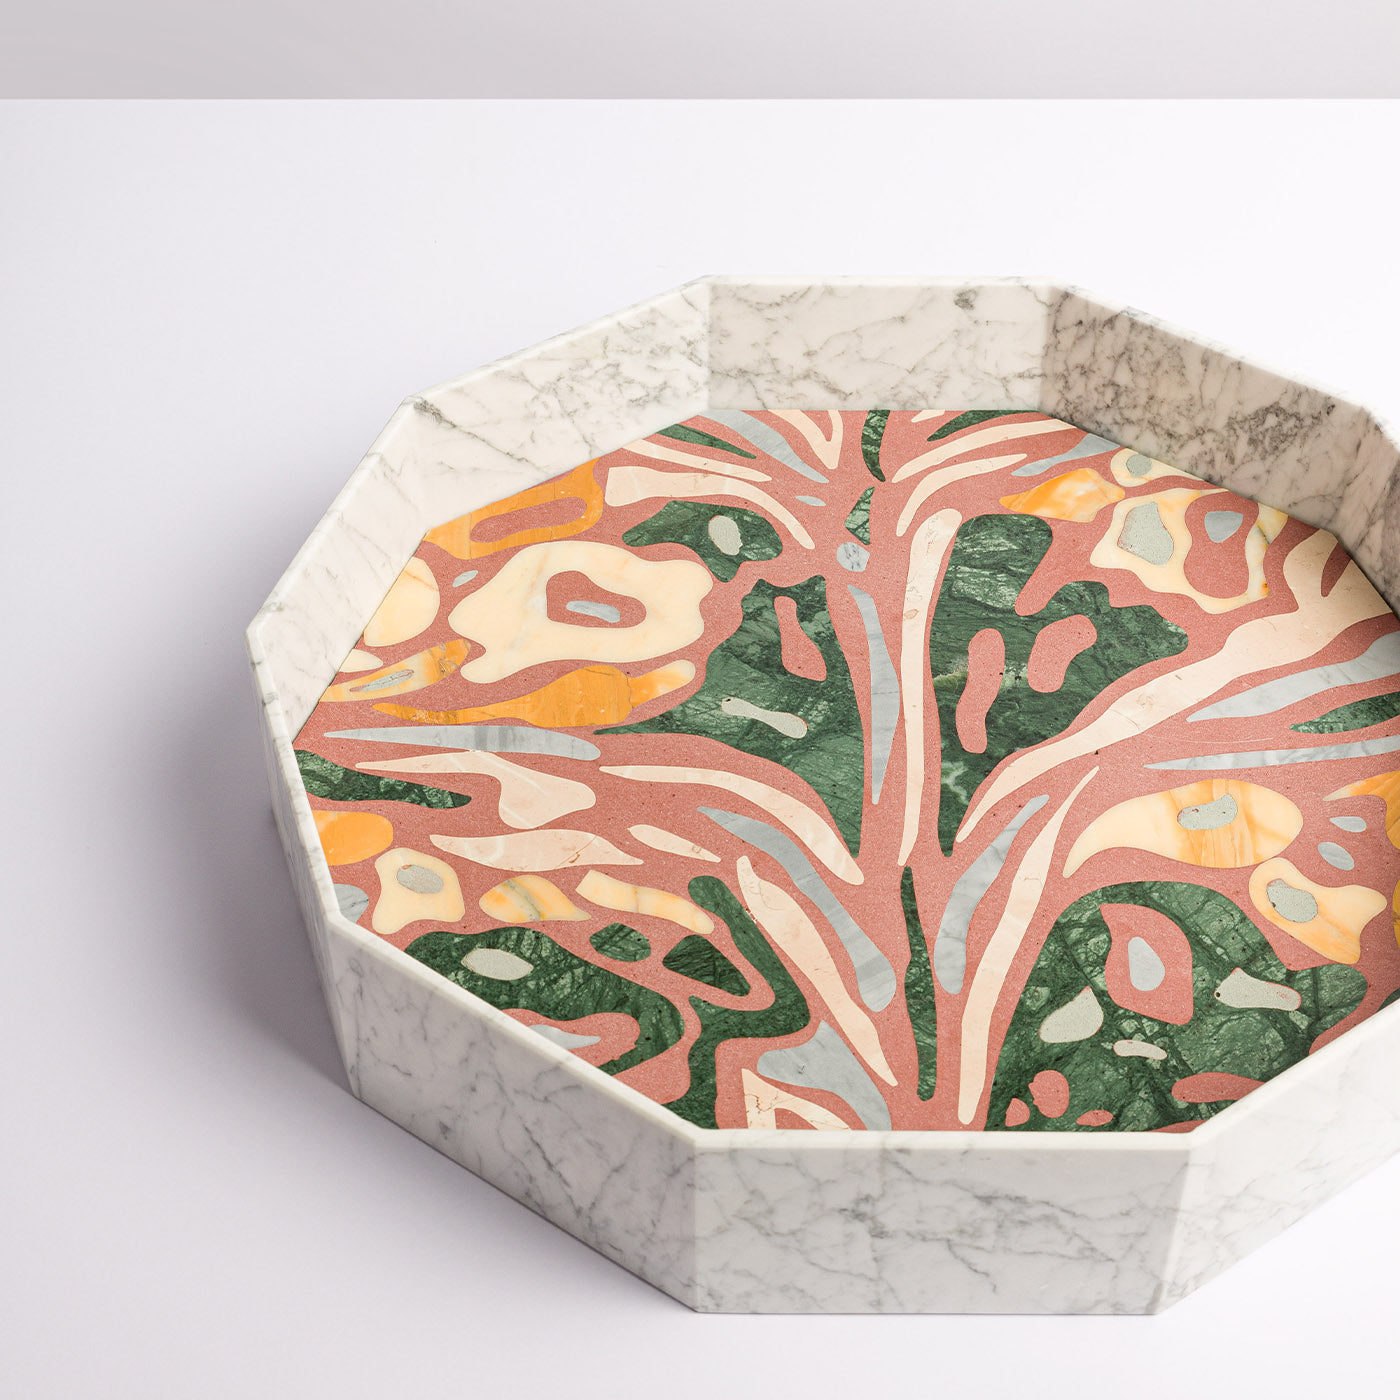 Marble Marbling Decagonal Tray by Zanellato&Bortotto #2 - Alternative view 1